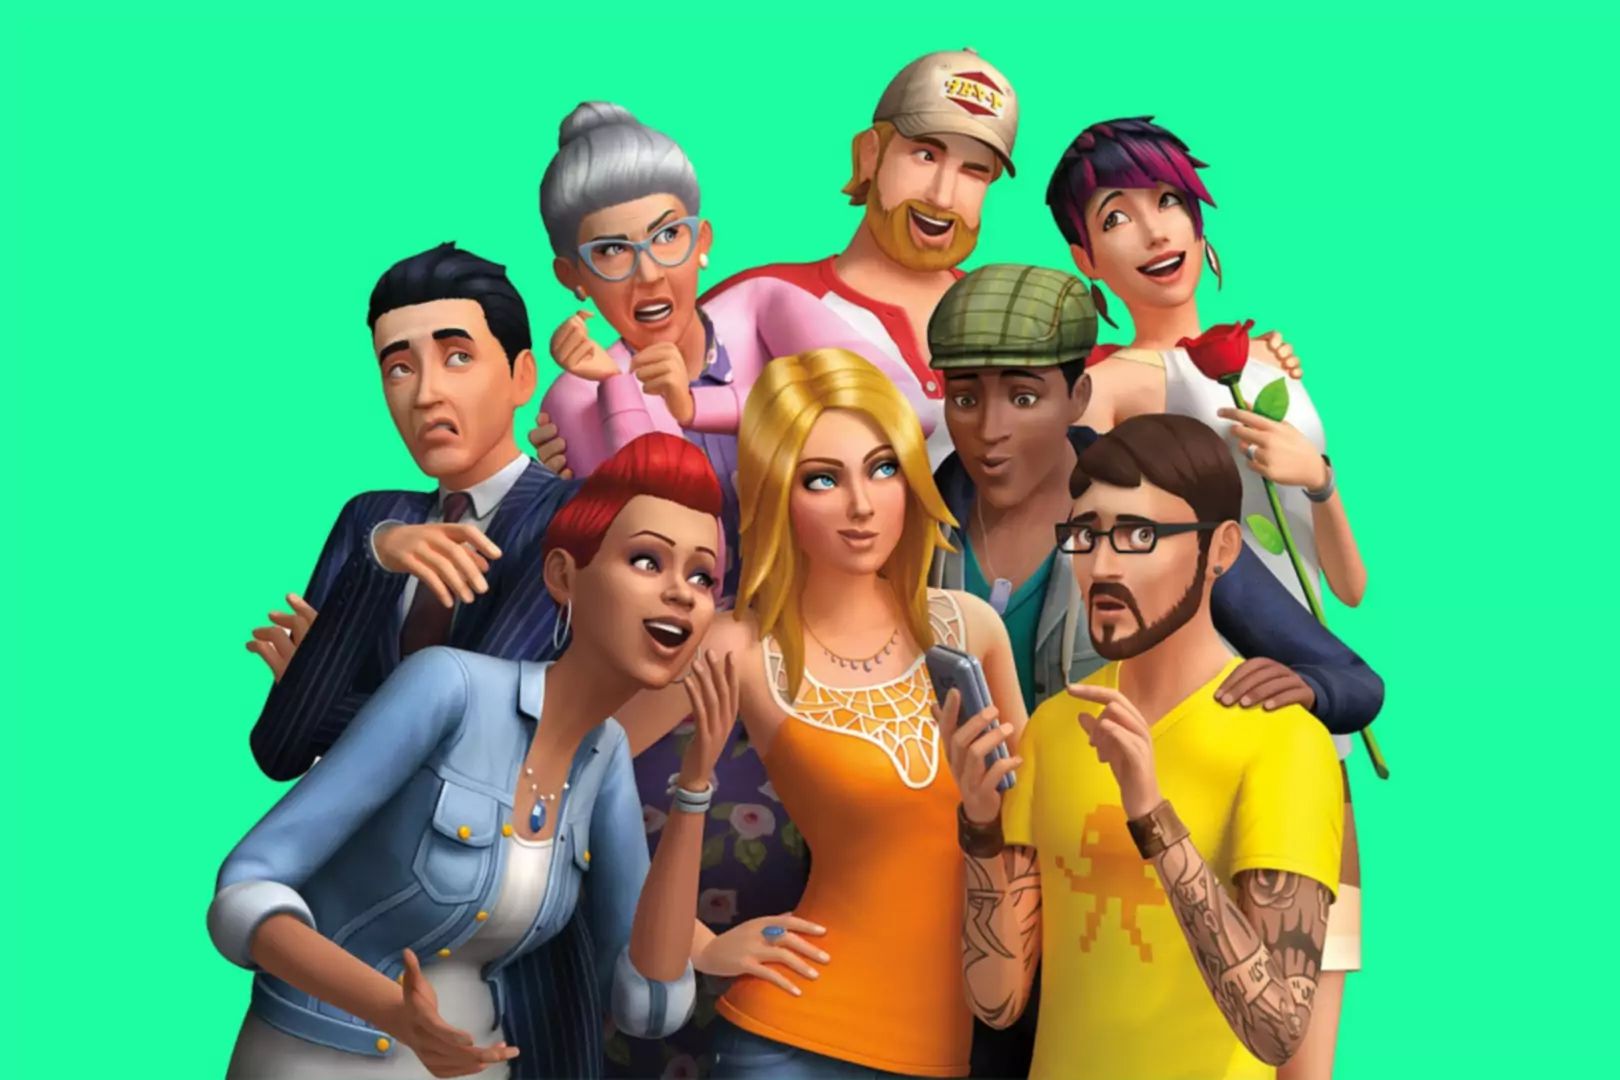 Des personnages Sims en images de synthèse posant ensemble et faisant des expressions stupides.